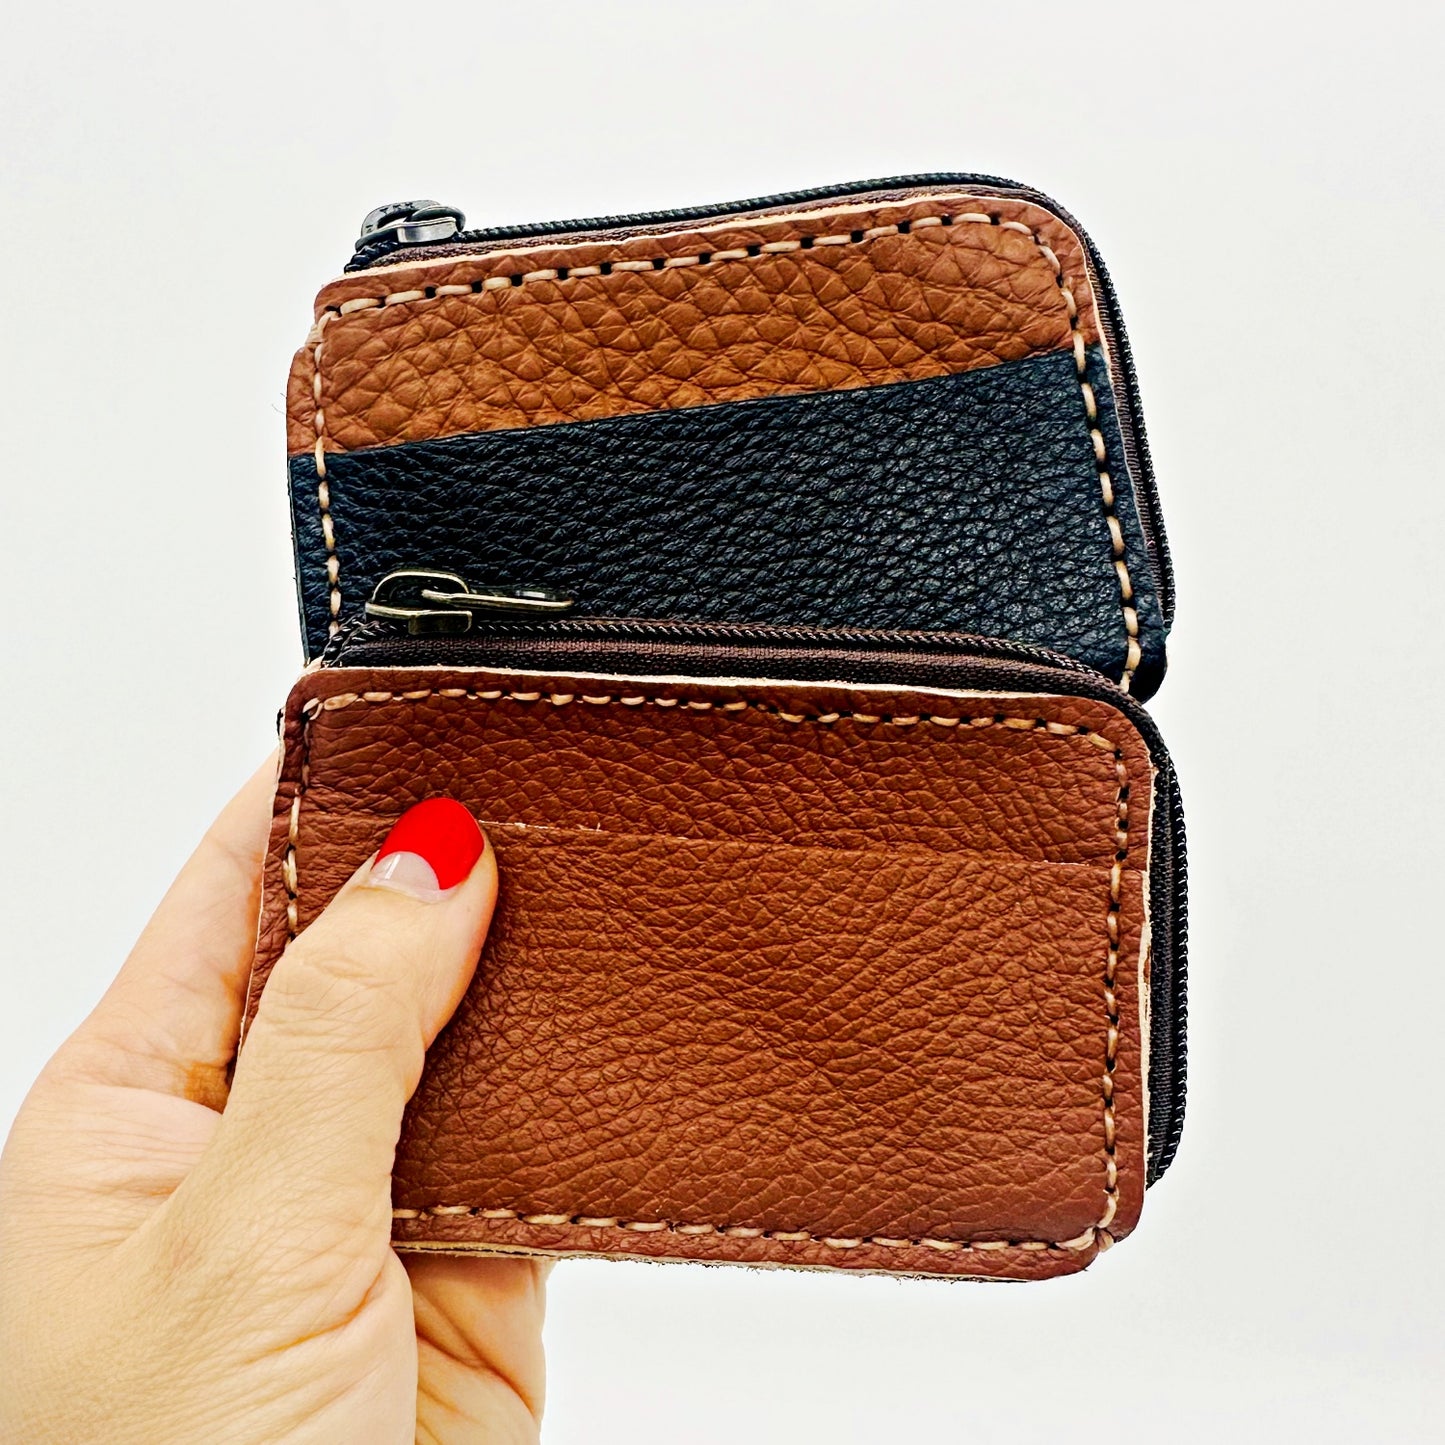 Handmade leather zipper cardholder/ Mini wallet